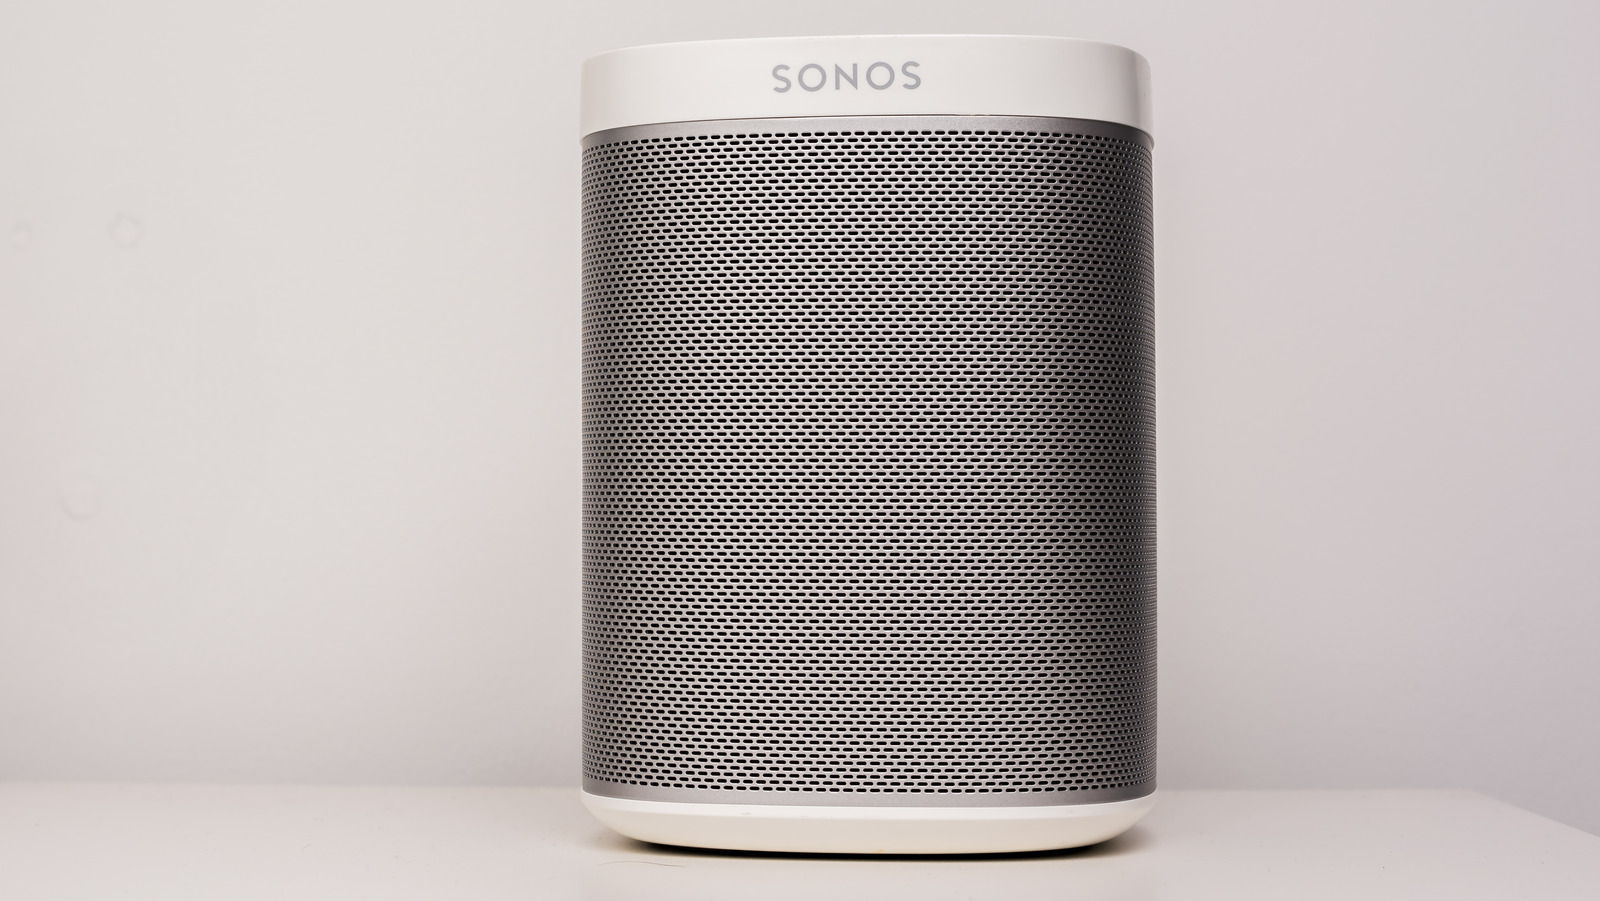 آیا بلندگوهای صدای فراگیر Sonos واقعاً بی سیم هستند؟